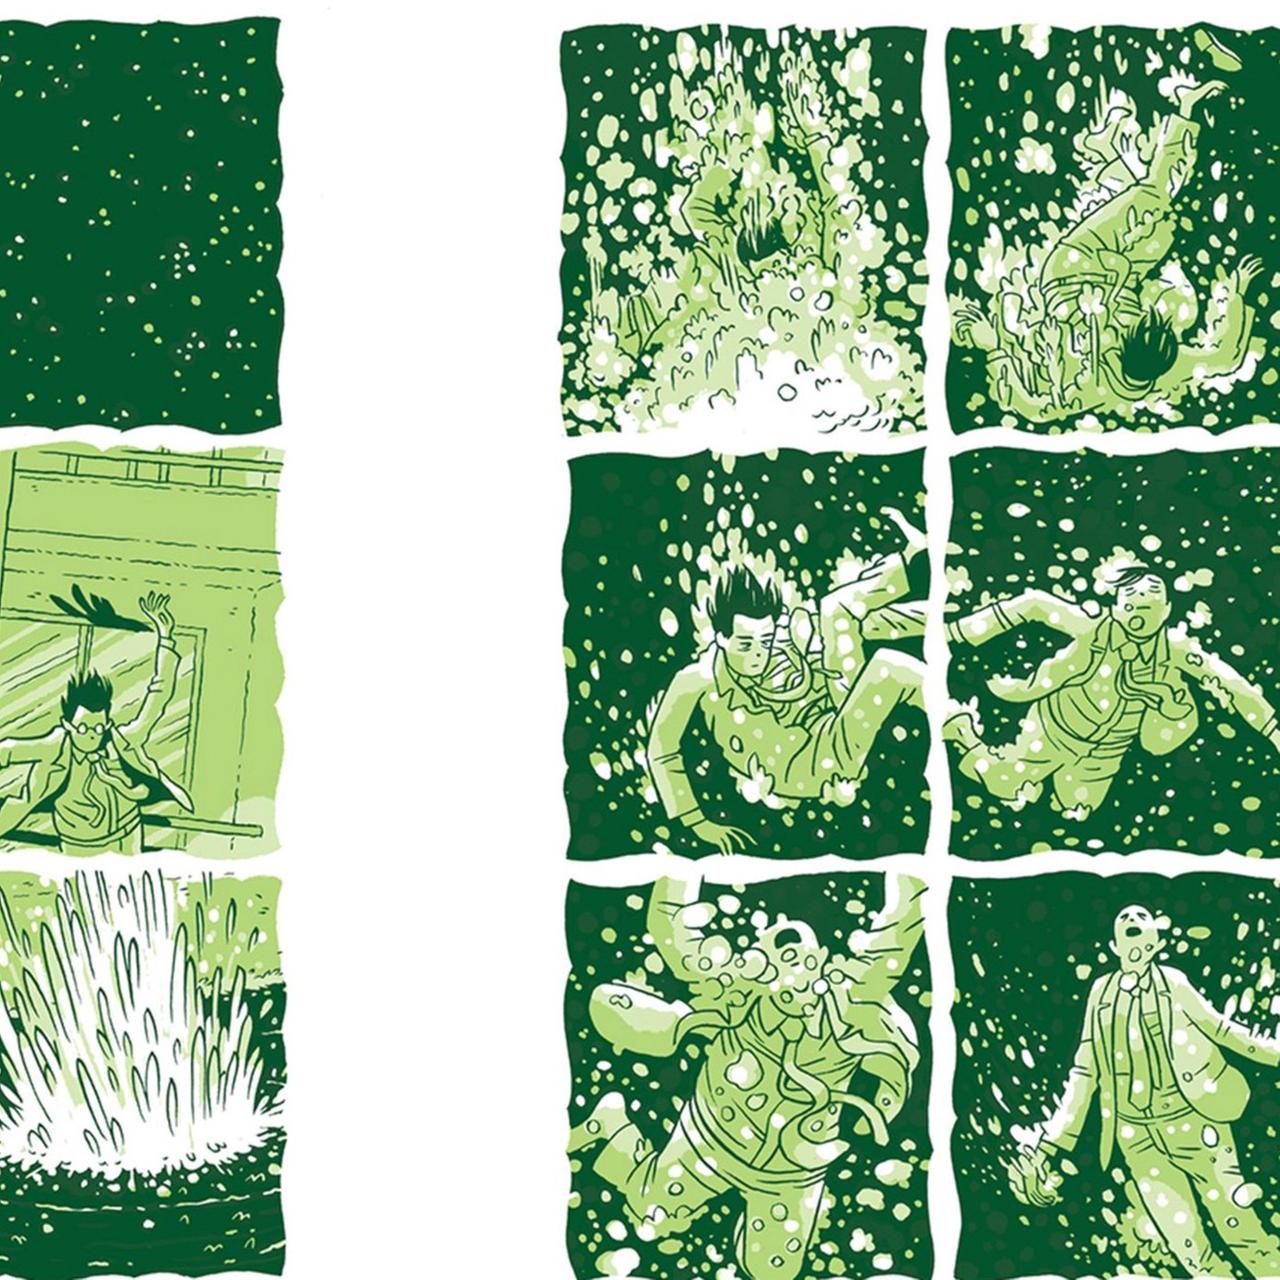 Ausschnitt aus der Graphic Novel "Zwei bleiben" von Jordan Crane: ein Mann ist im Anzug ins Wasser gefallen und sein Körper trudelt darin herum. 